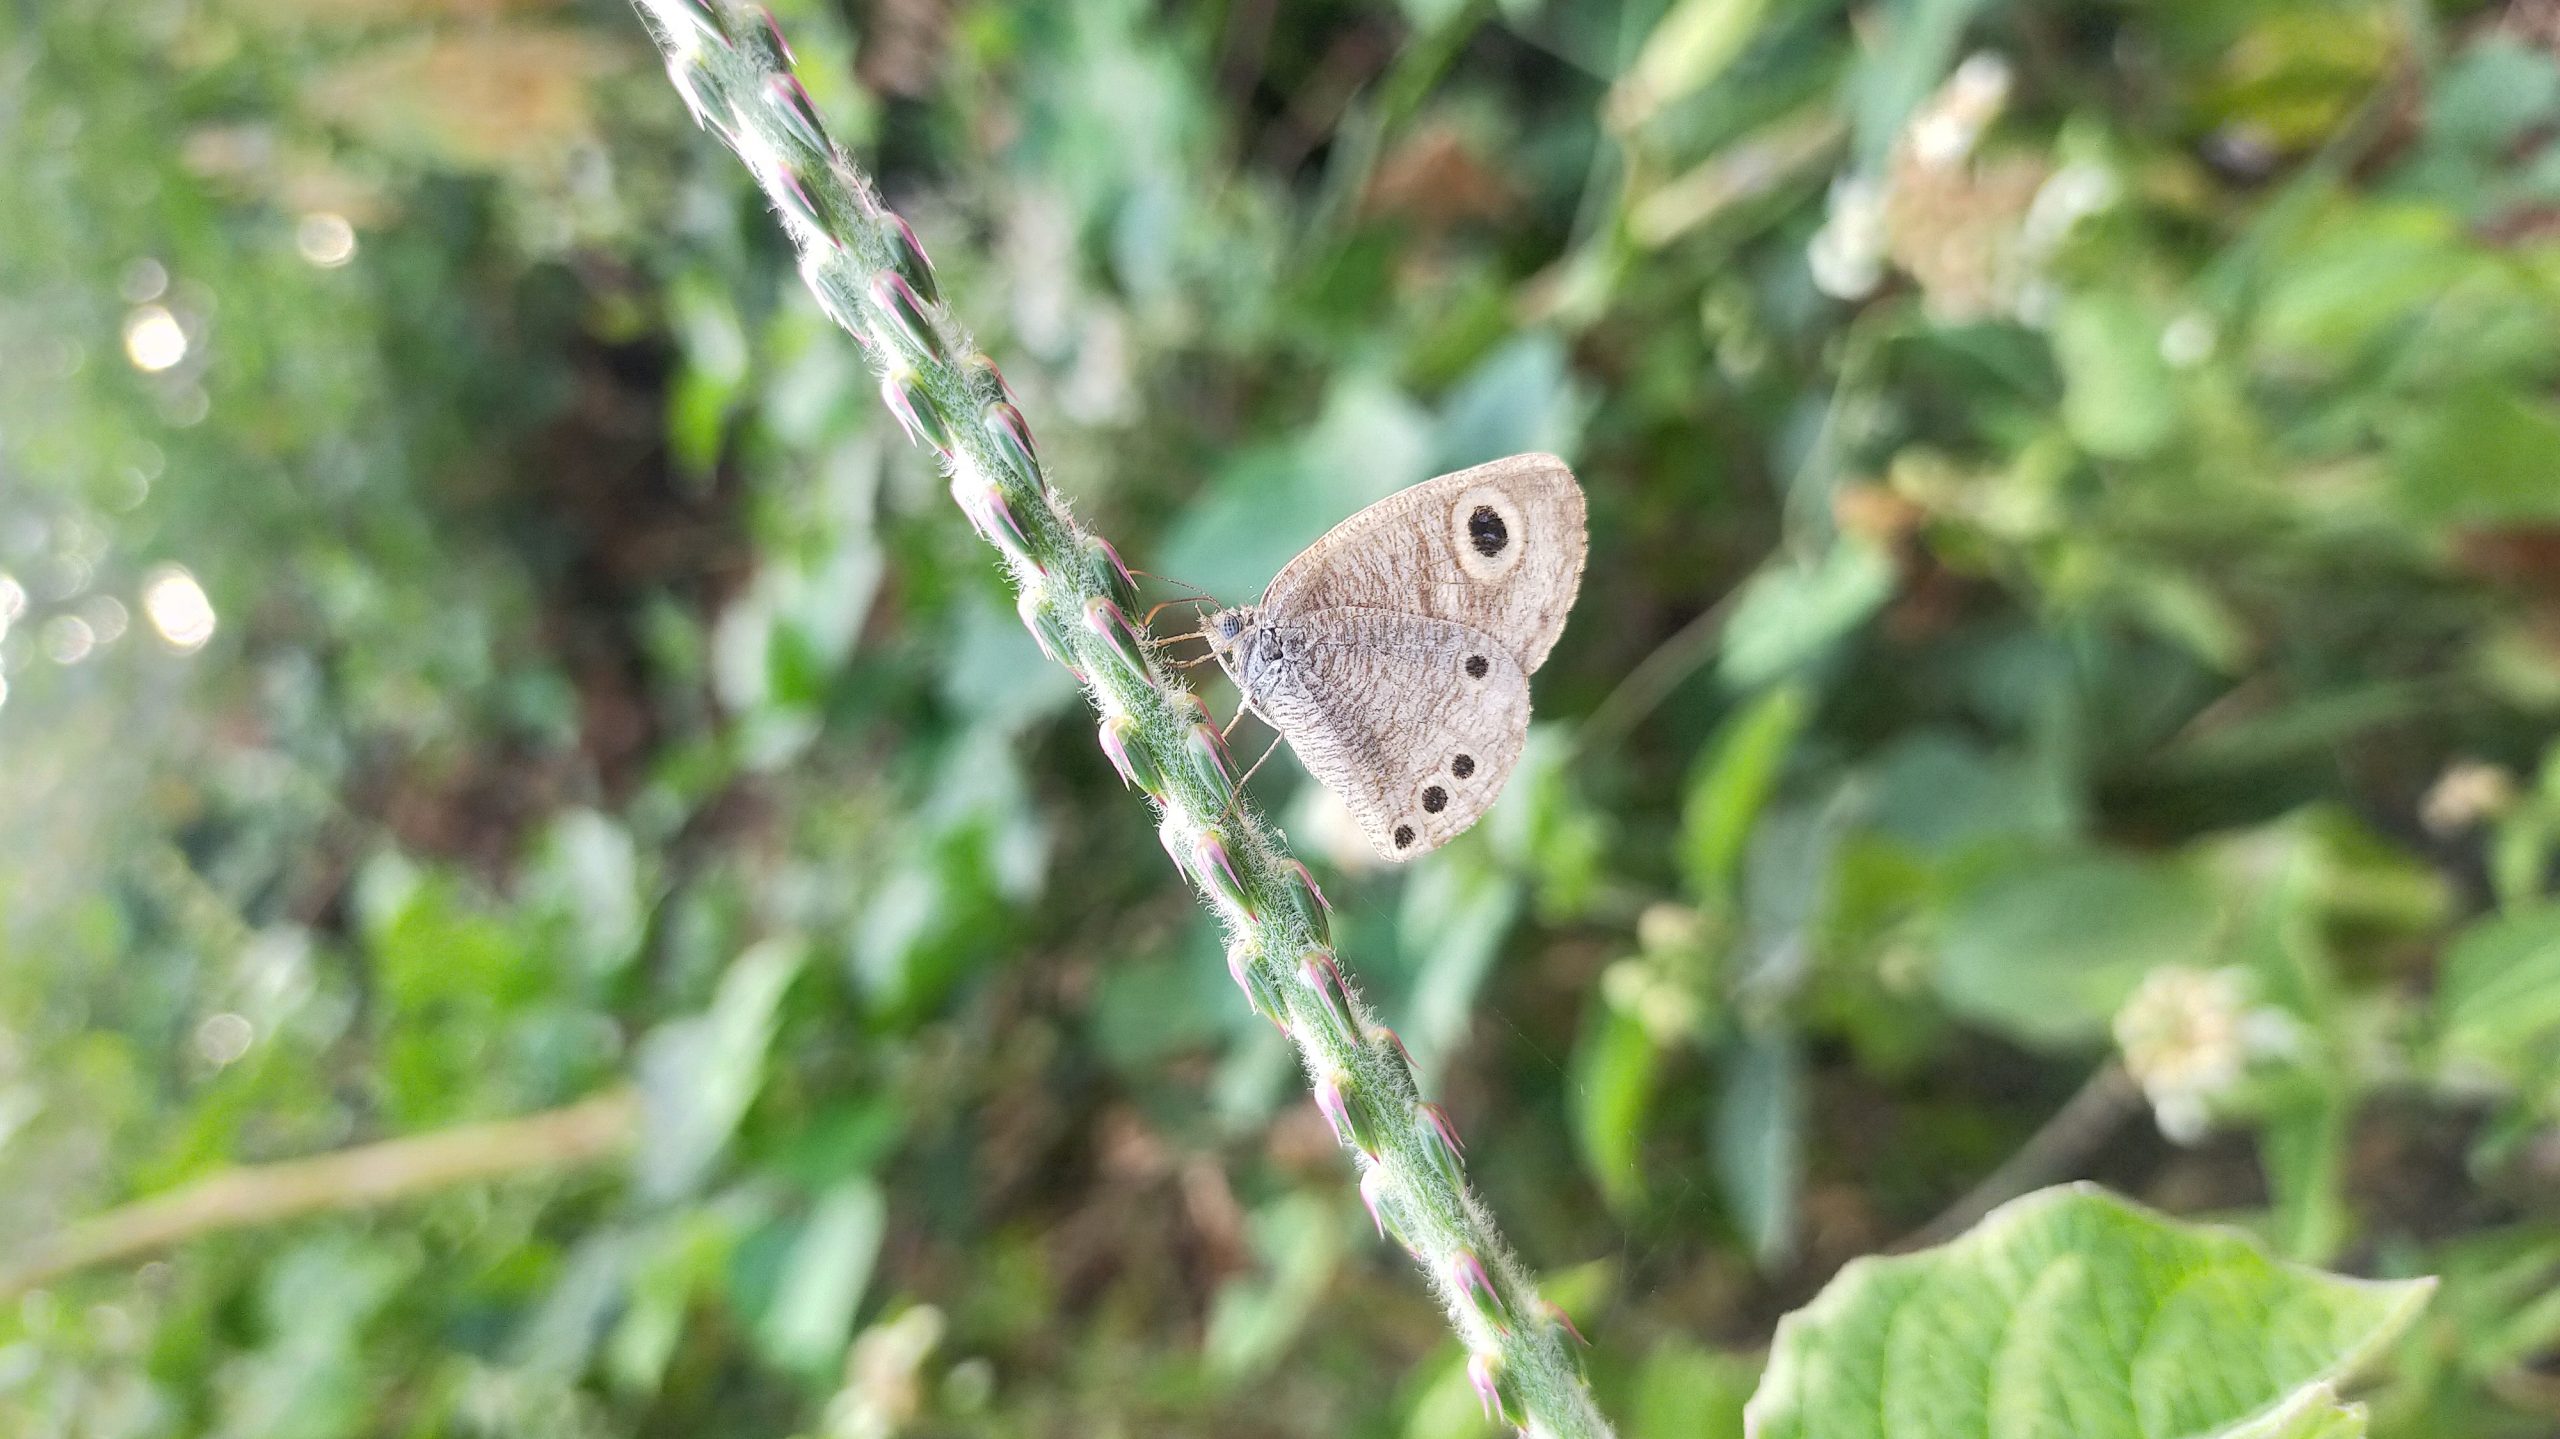 A butterfly on a plant stem